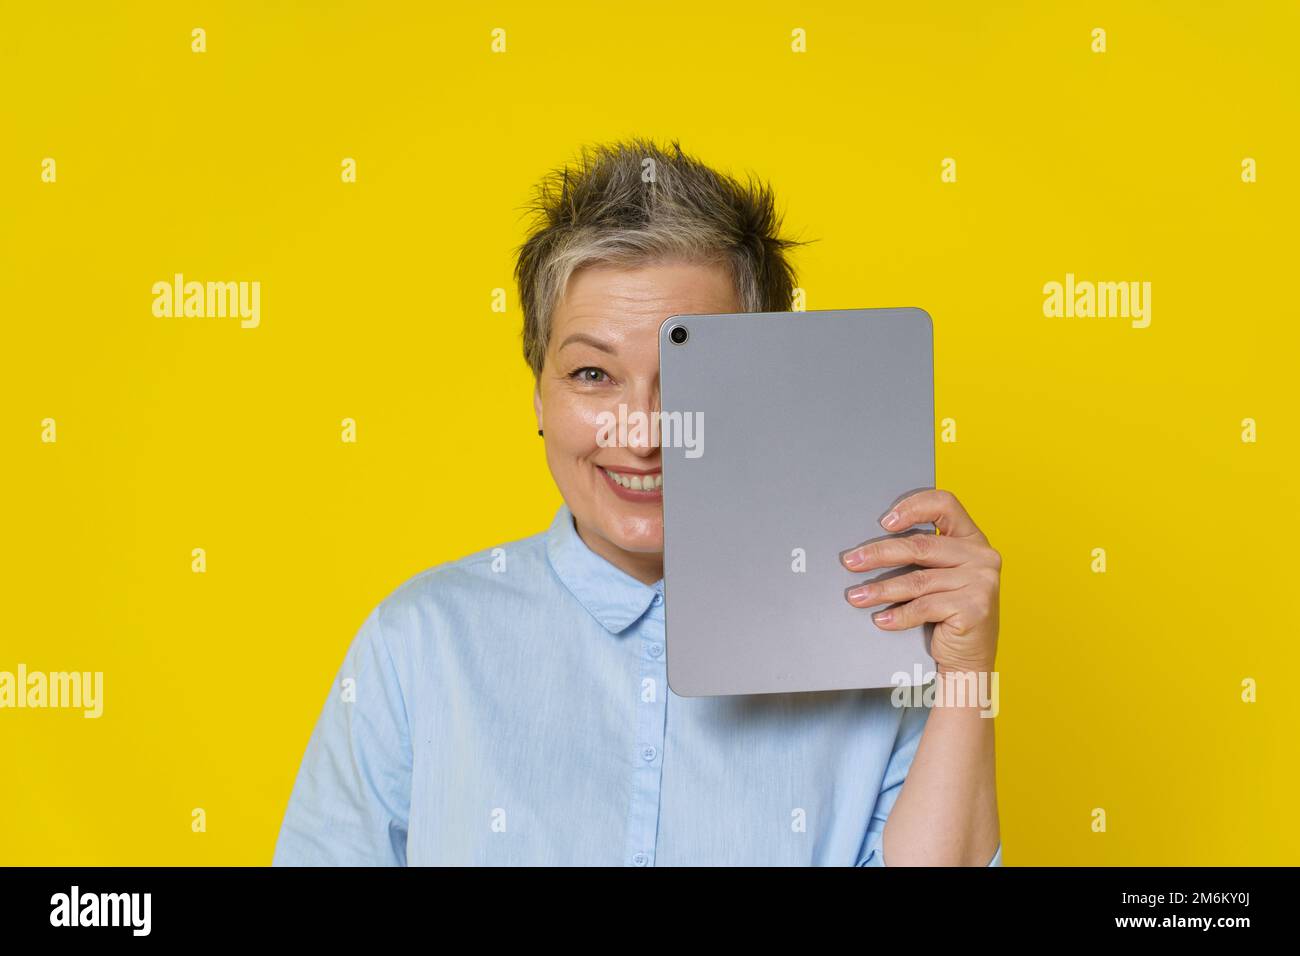 Femme mûre aux cheveux gris avec une peau derrière un Tablet pc travaillant en ligne ou sur les réseaux sociaux. Jolie femme en 50s portant un chemisier bleu isol Banque D'Images